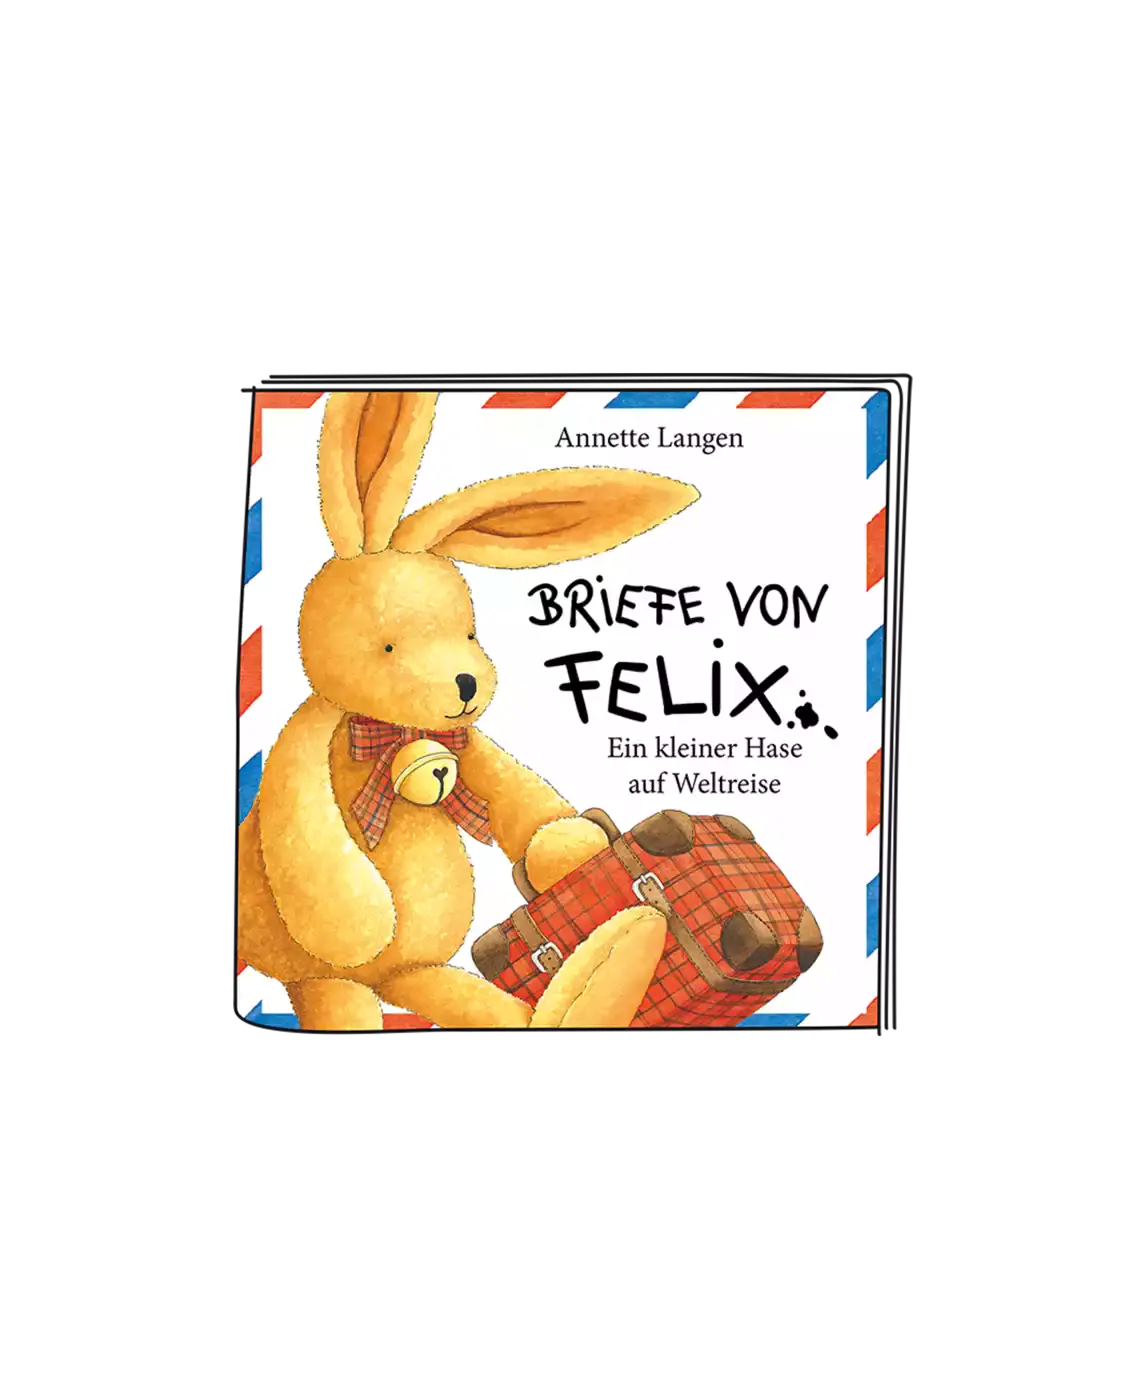 Felix - Briefe von Felix tonies 2000572867665 5